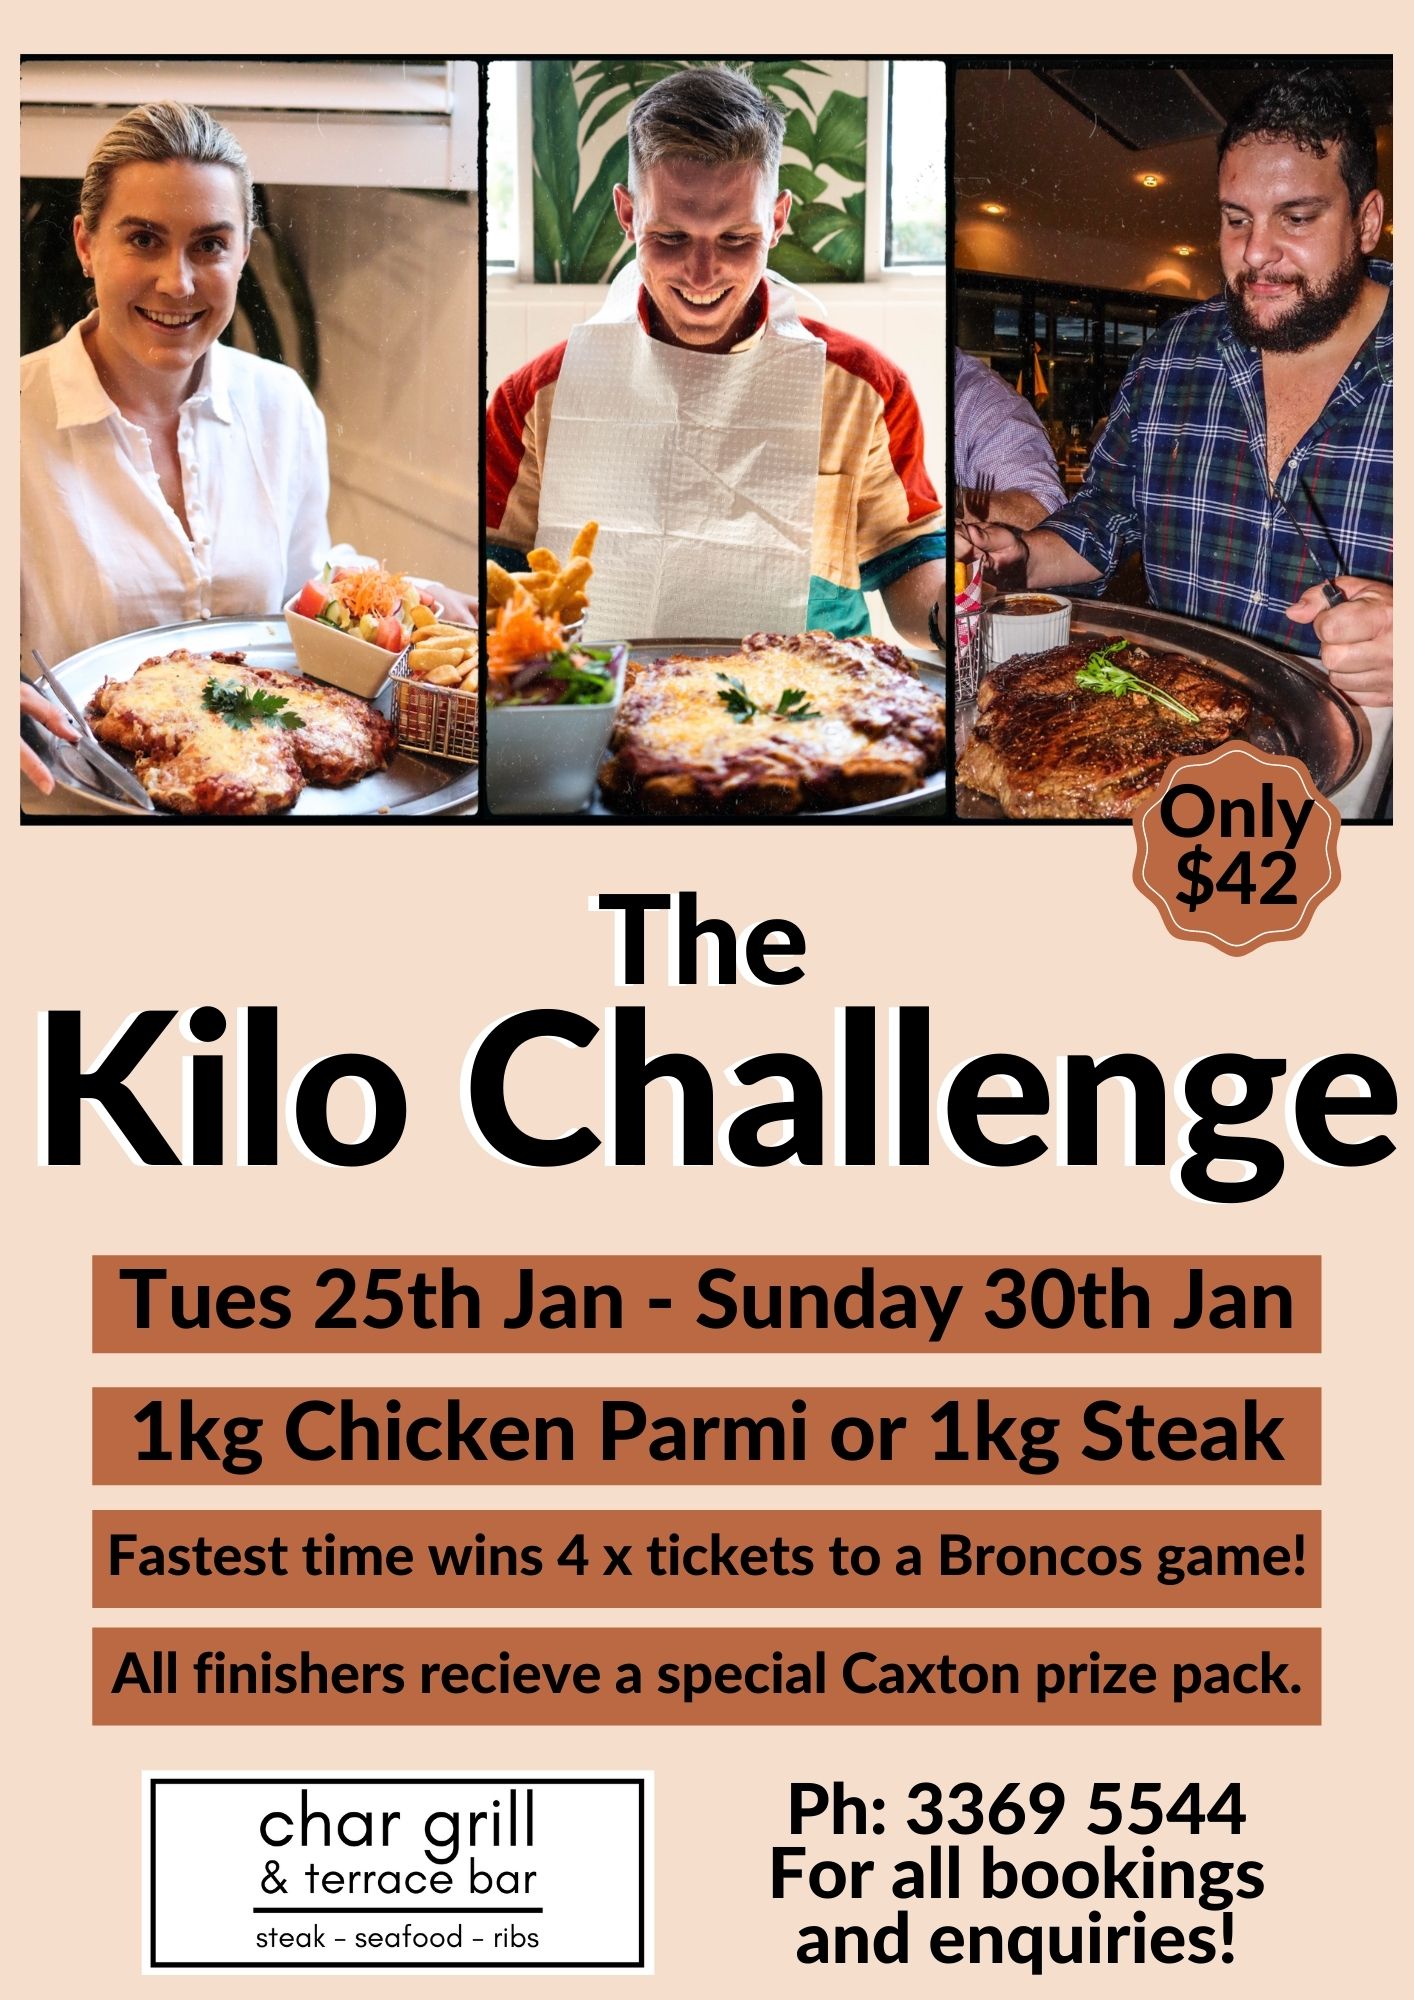 The Kilo Challenge